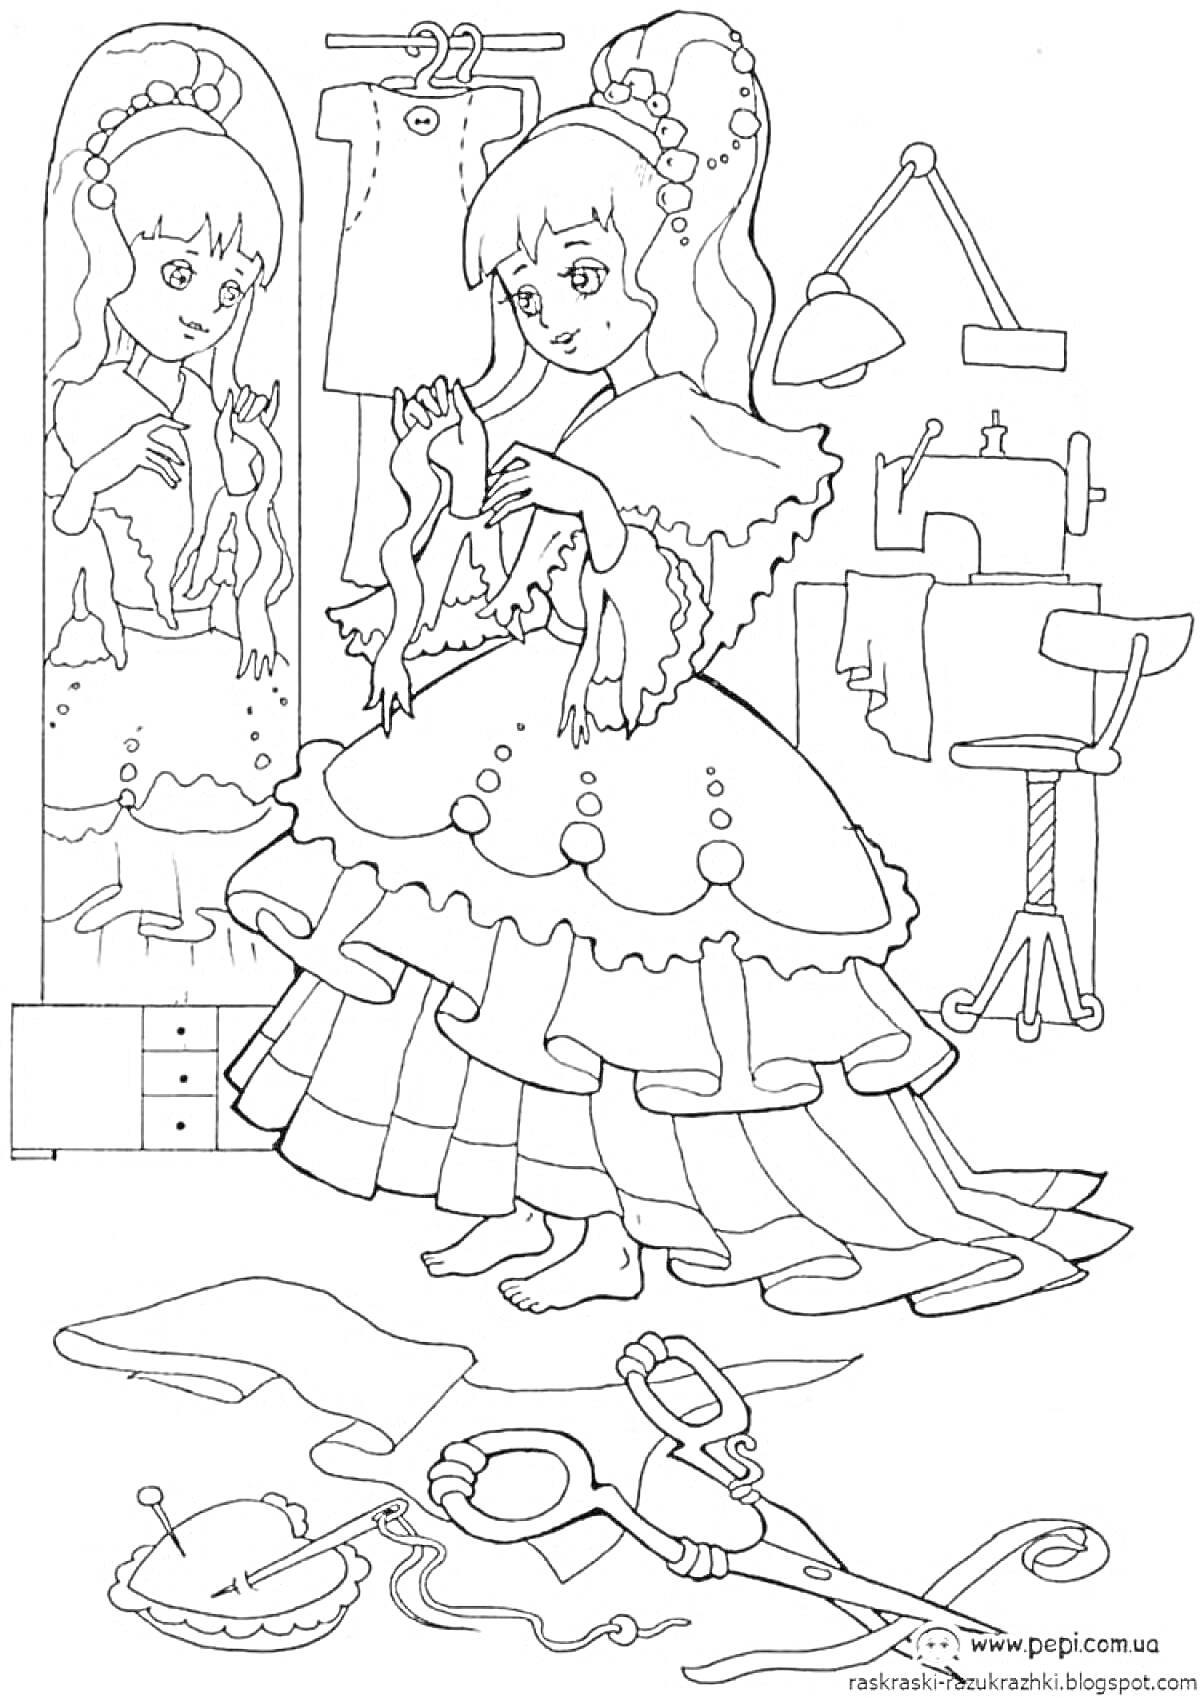 Девочка шьёт платье у зеркала в комнате с швейной машиной и манекеном